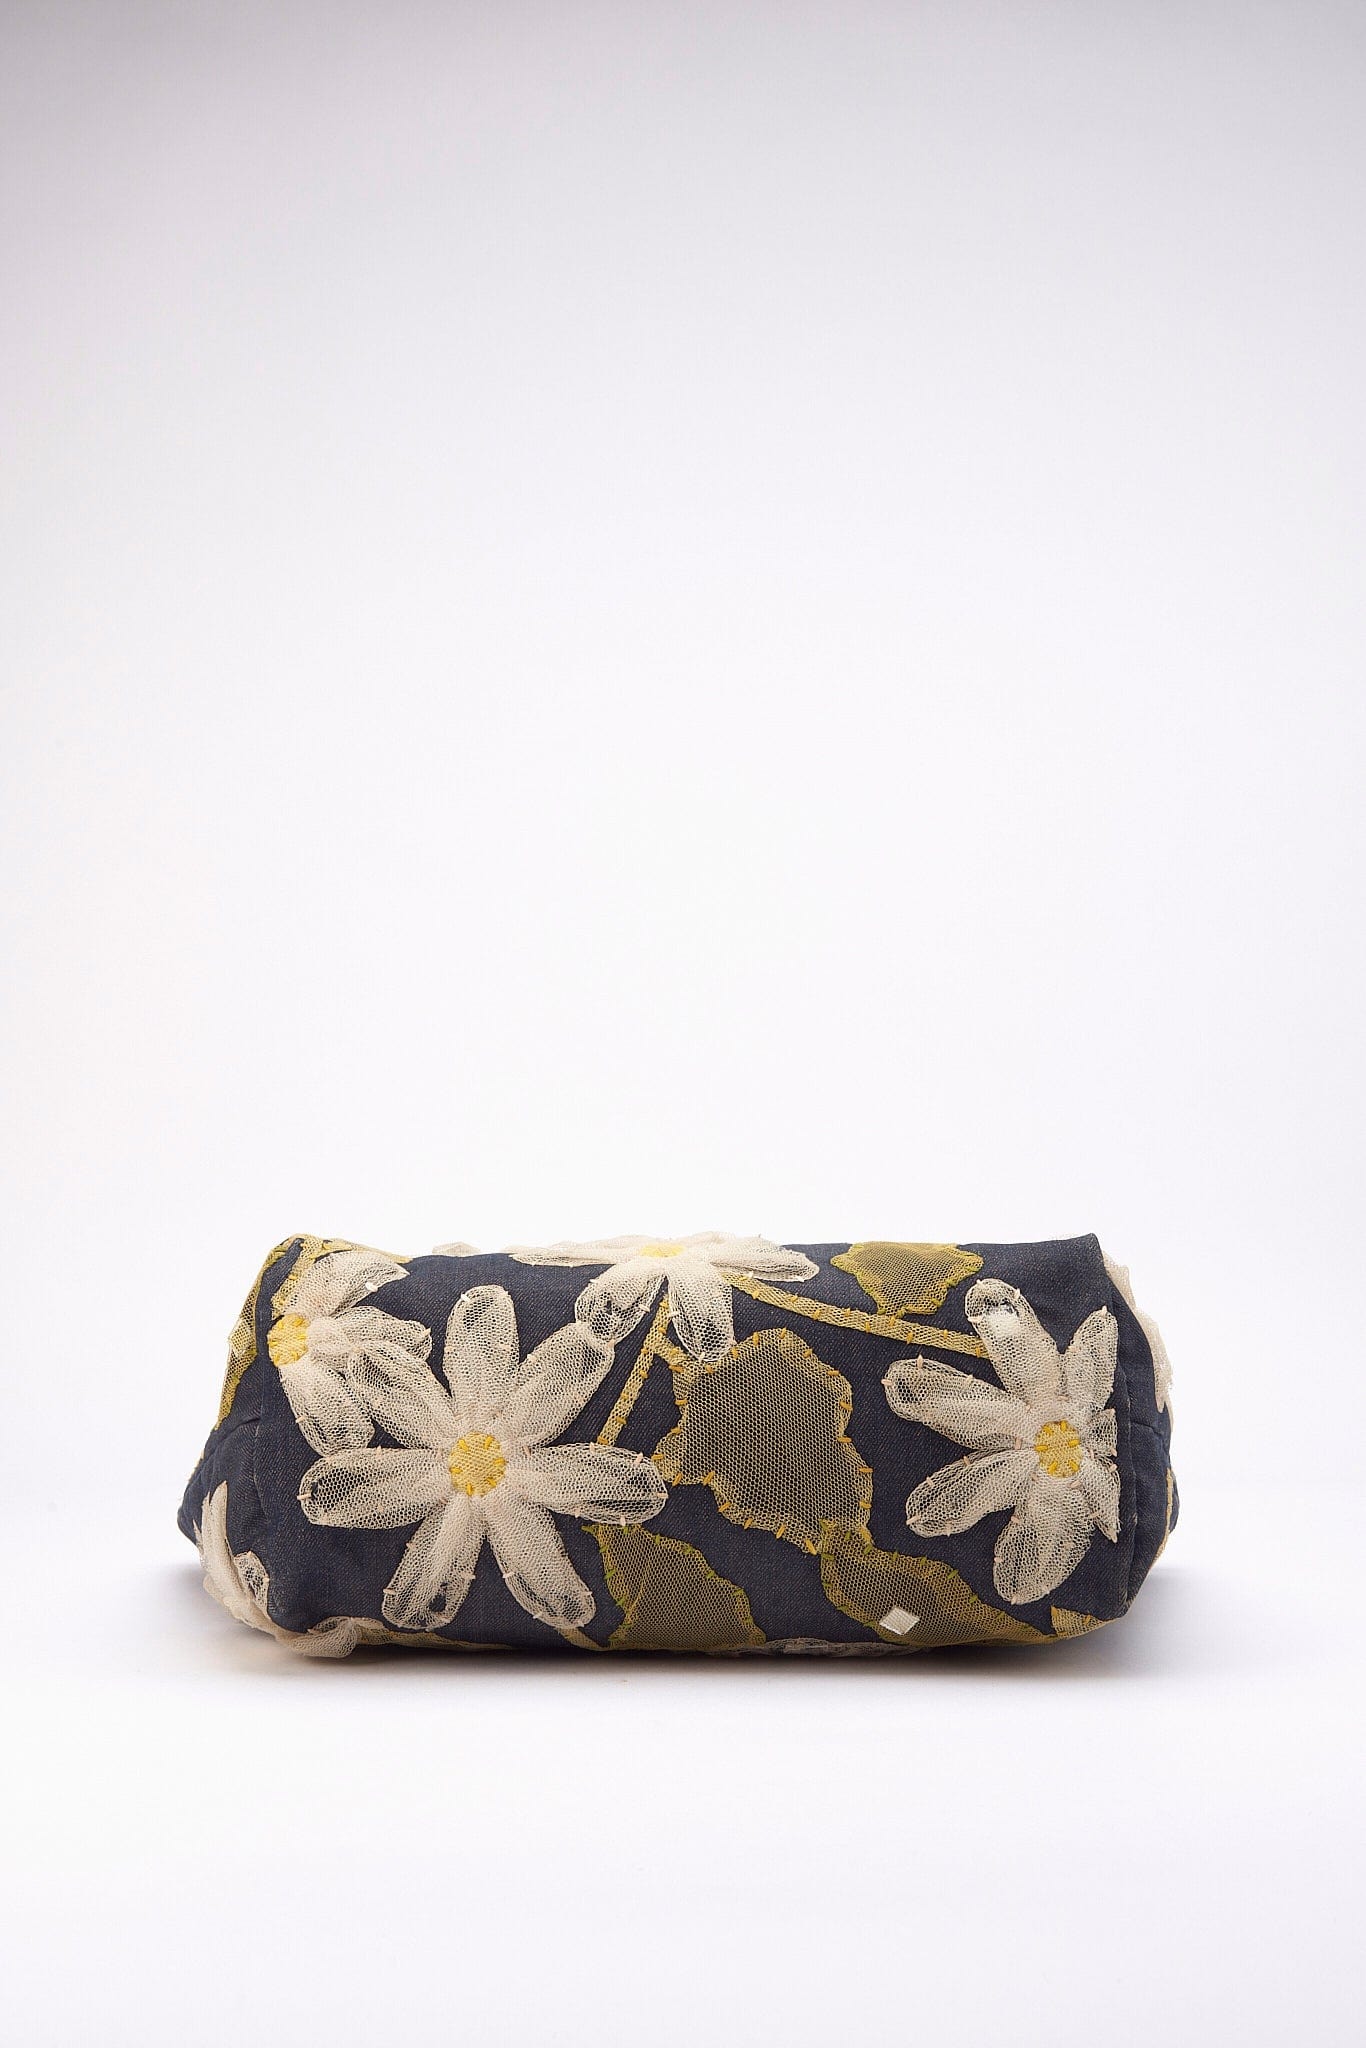 Vintage Fendi Denim Tote Bag with Flowers